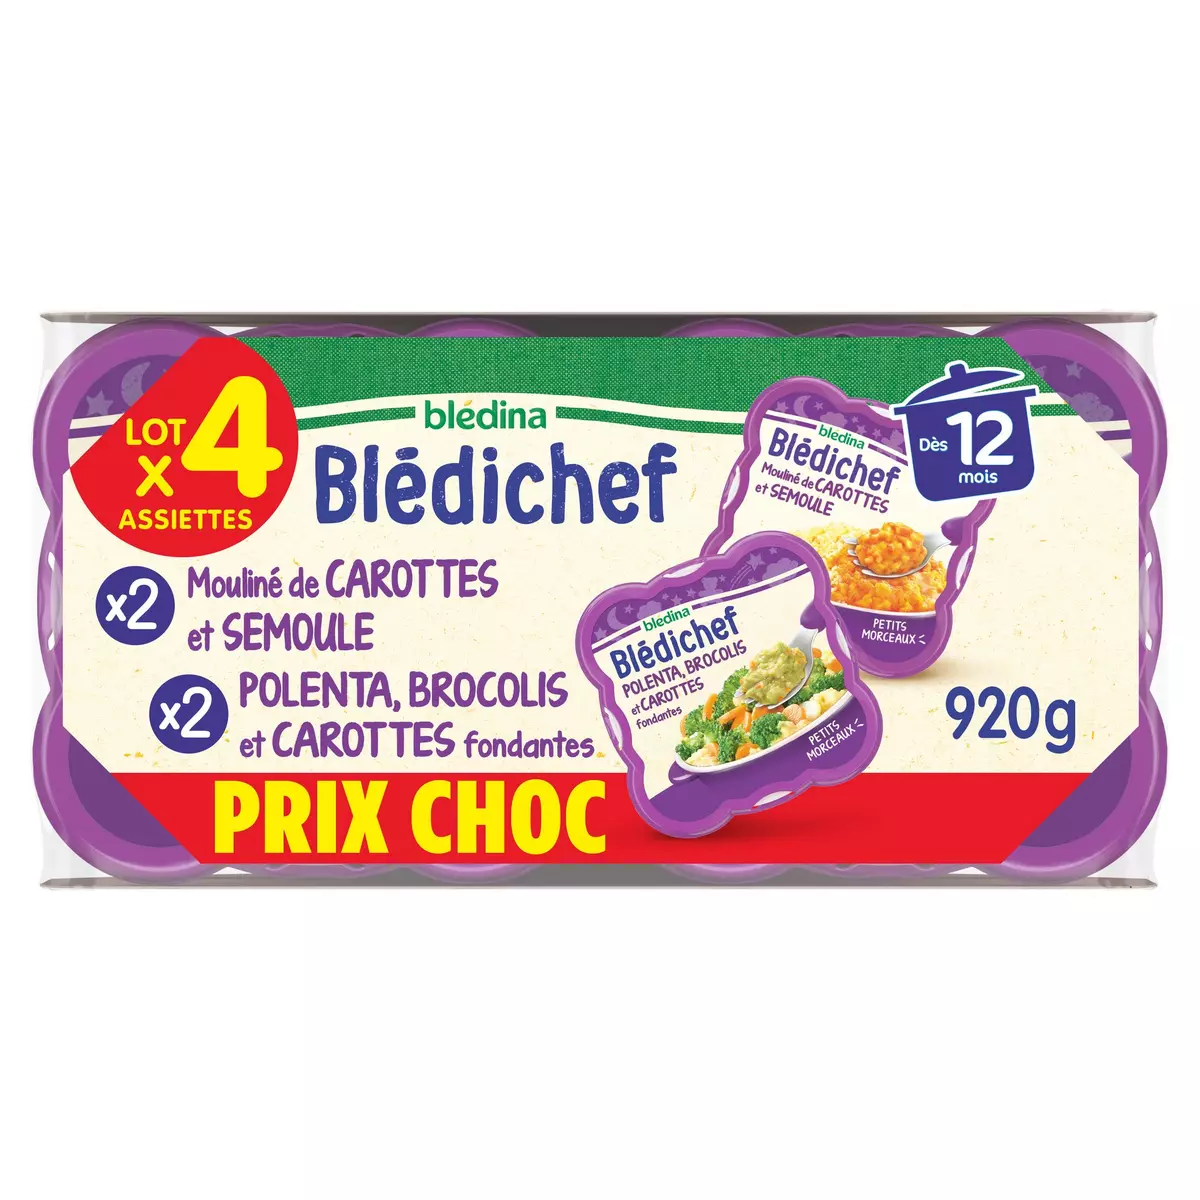 BLEDINA Blédichef assiette mouliné de carotte semoule et polenta brocolis carottes dès 12 mois 4x230g